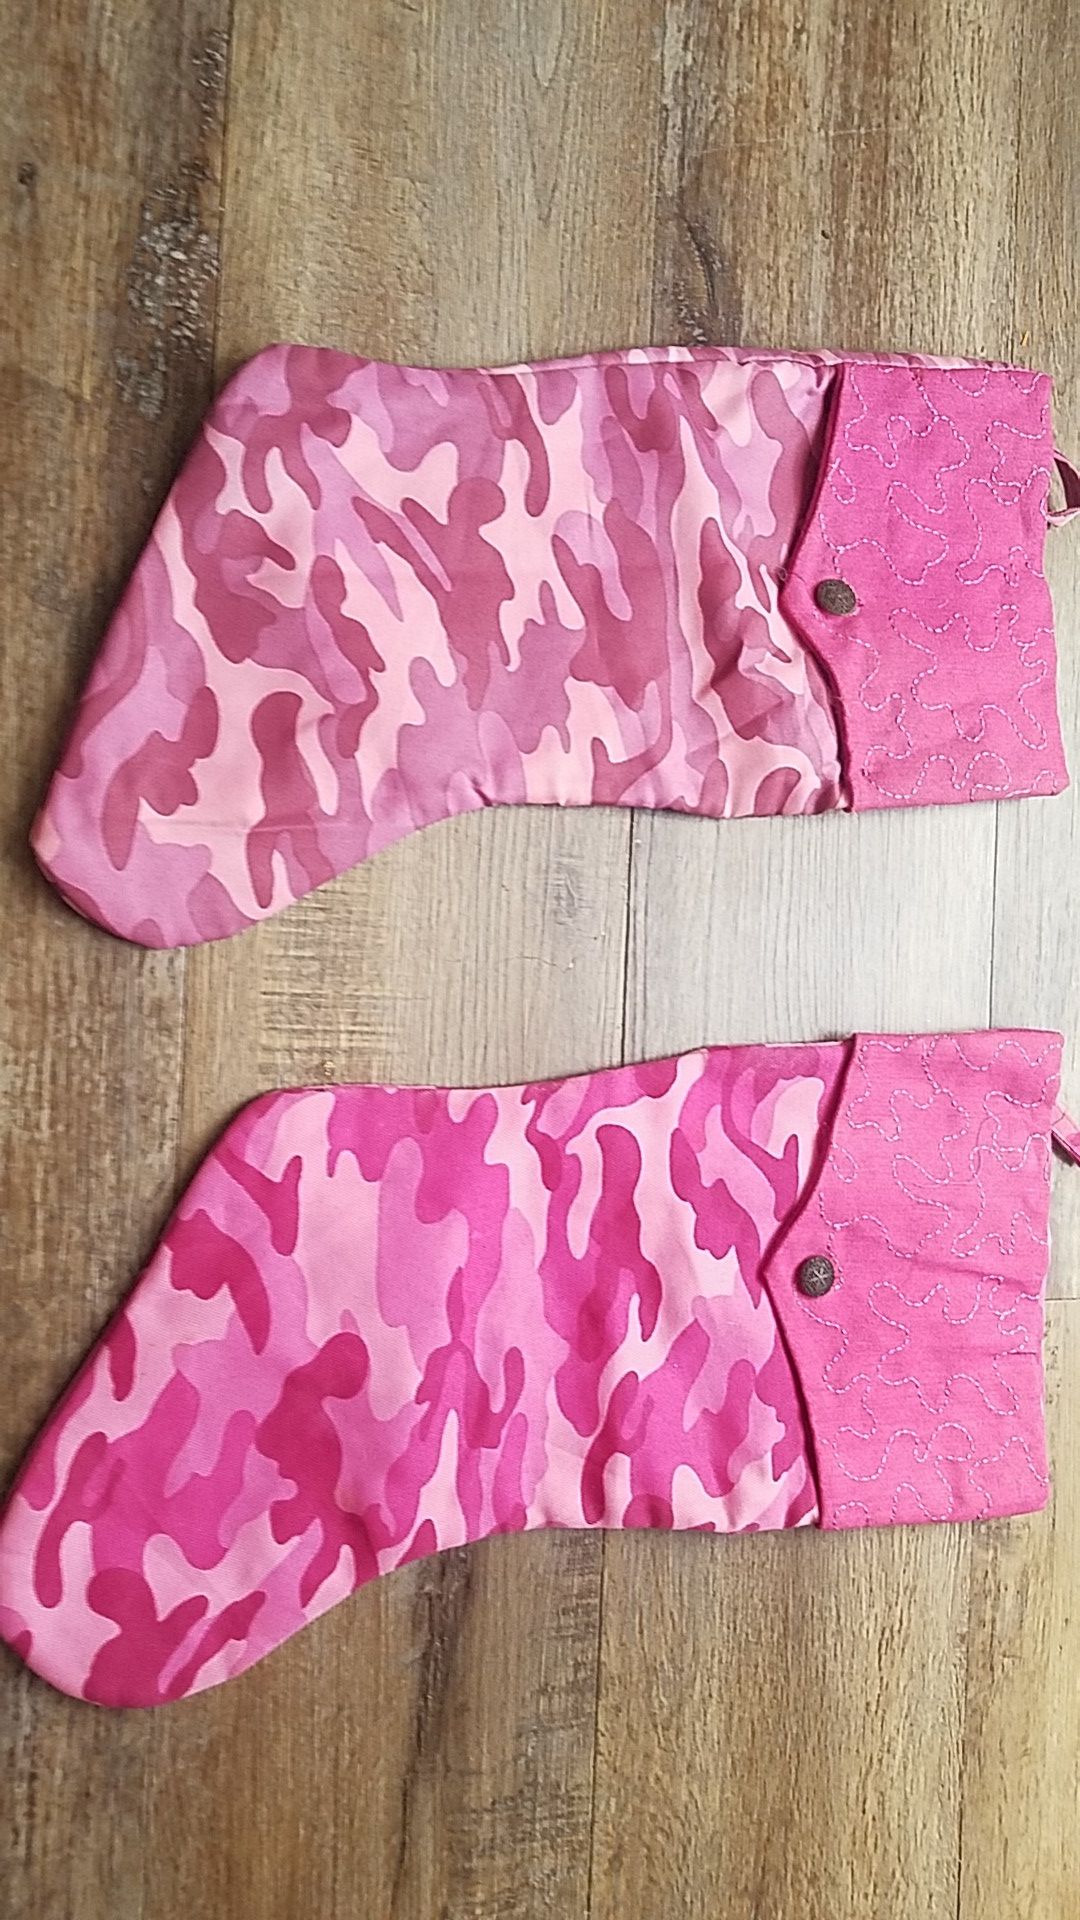 Pink camo stockings